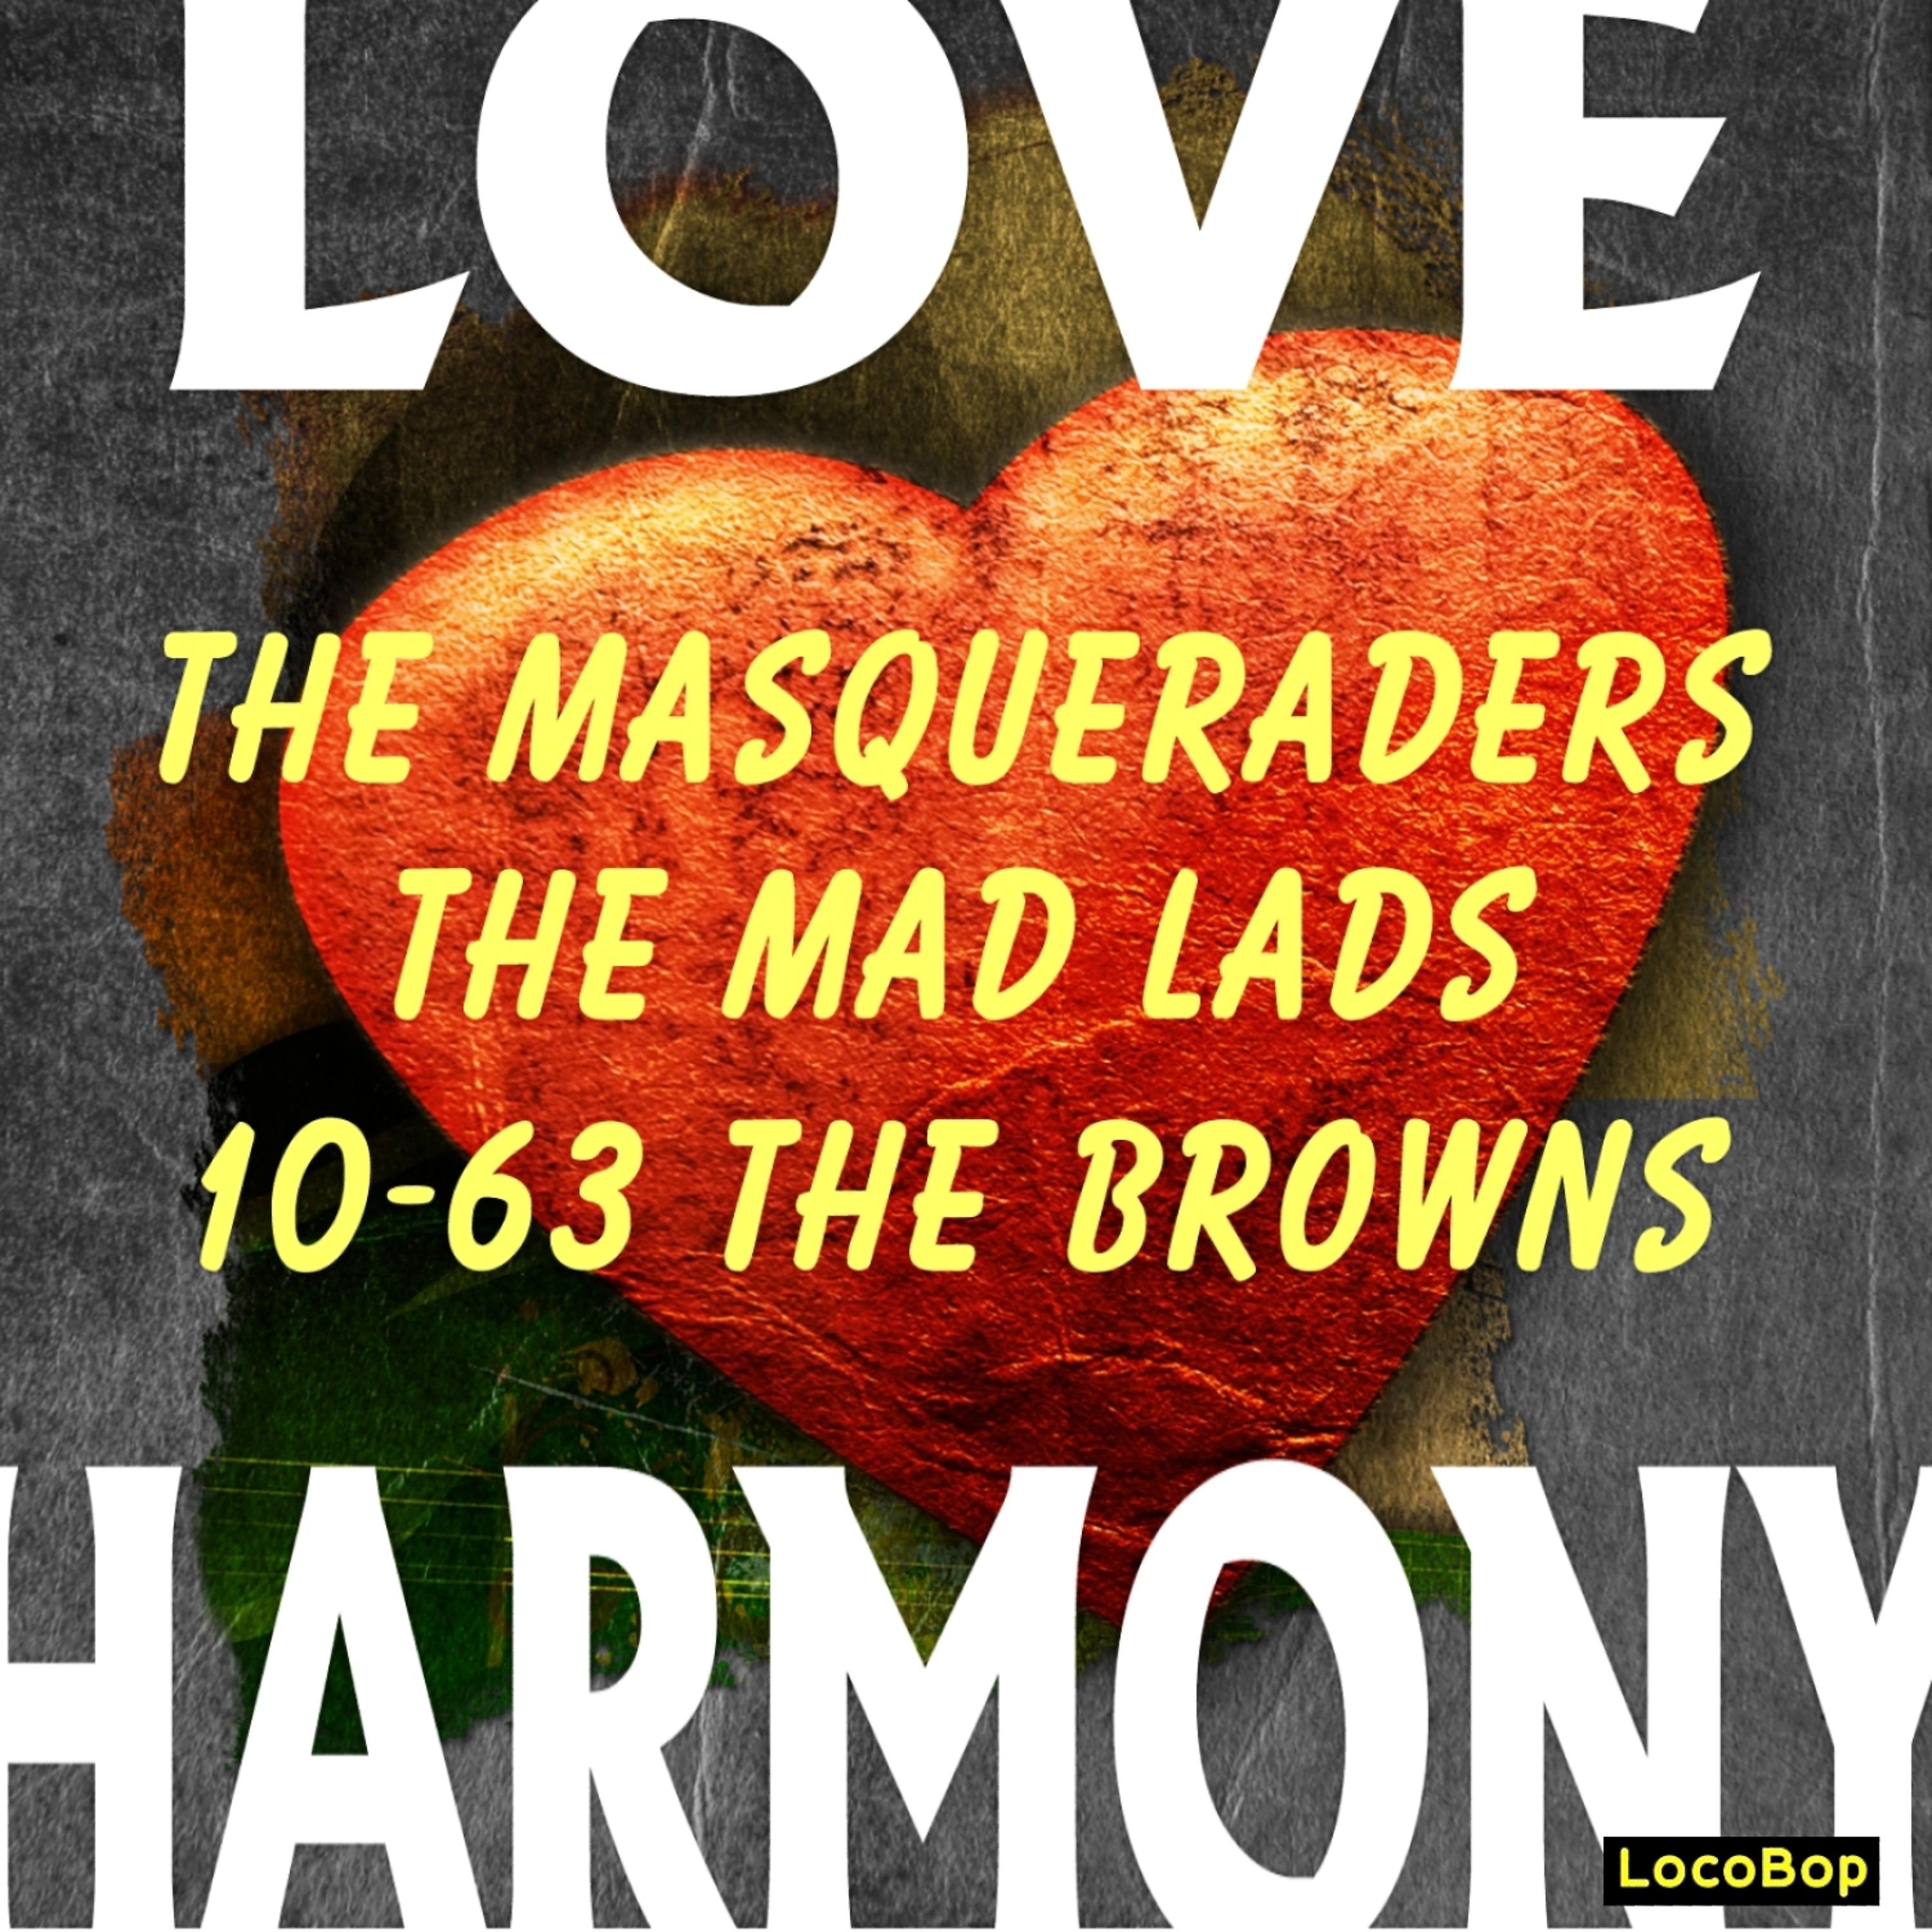 Постер альбома Love Harmony